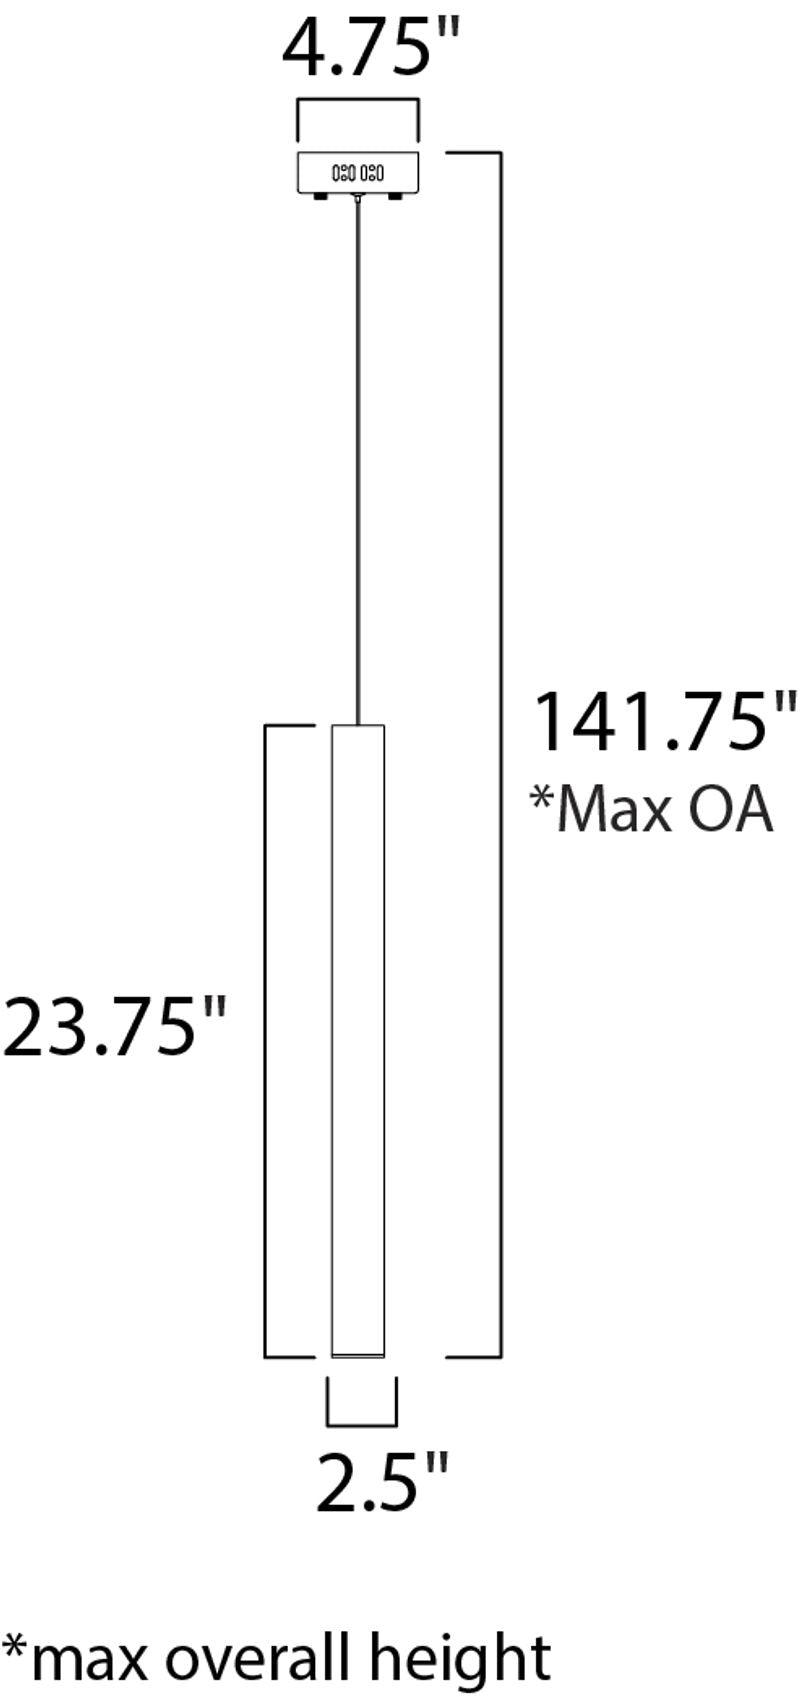 Flute 2.5' x 23.75' Single Light Mini-Pendant in Polished Chrome